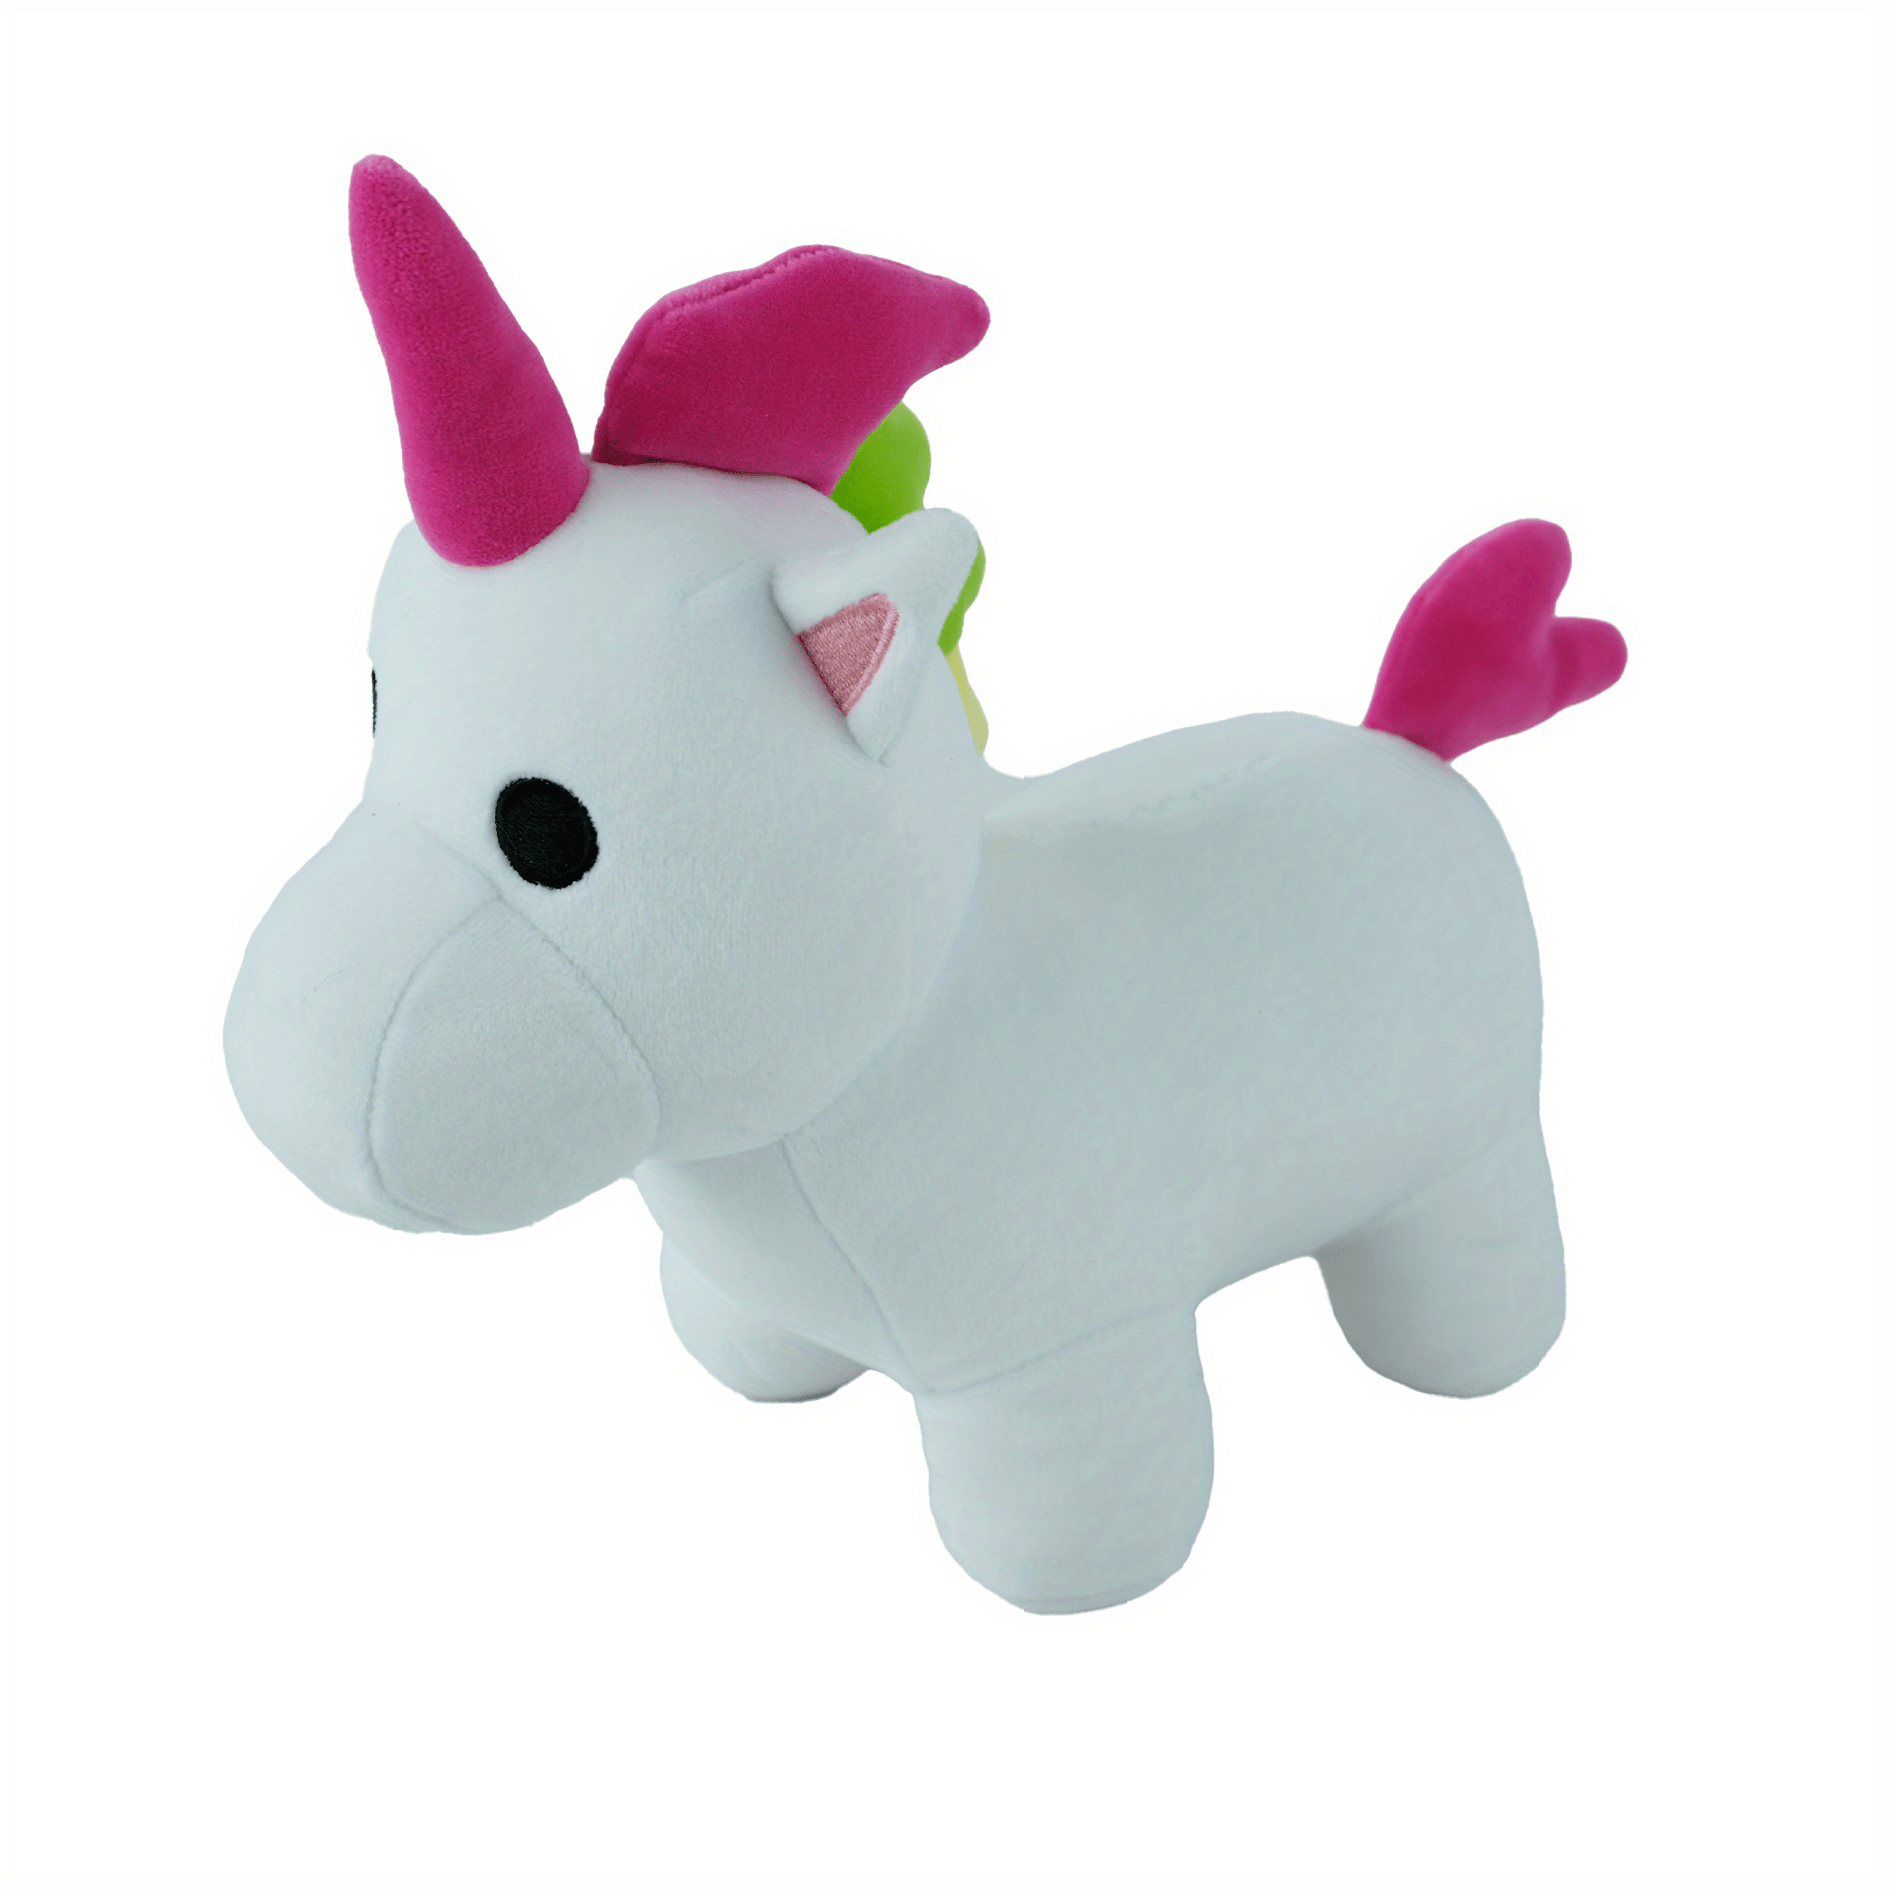  Adopt Me! Unicornio neón de peluche iluminado de 12 pulgadas,  suave y tierno, tres modos de iluminación, directamente del juego #1,  juguetes para niños a partir de 6 años : Juguetes y Juegos